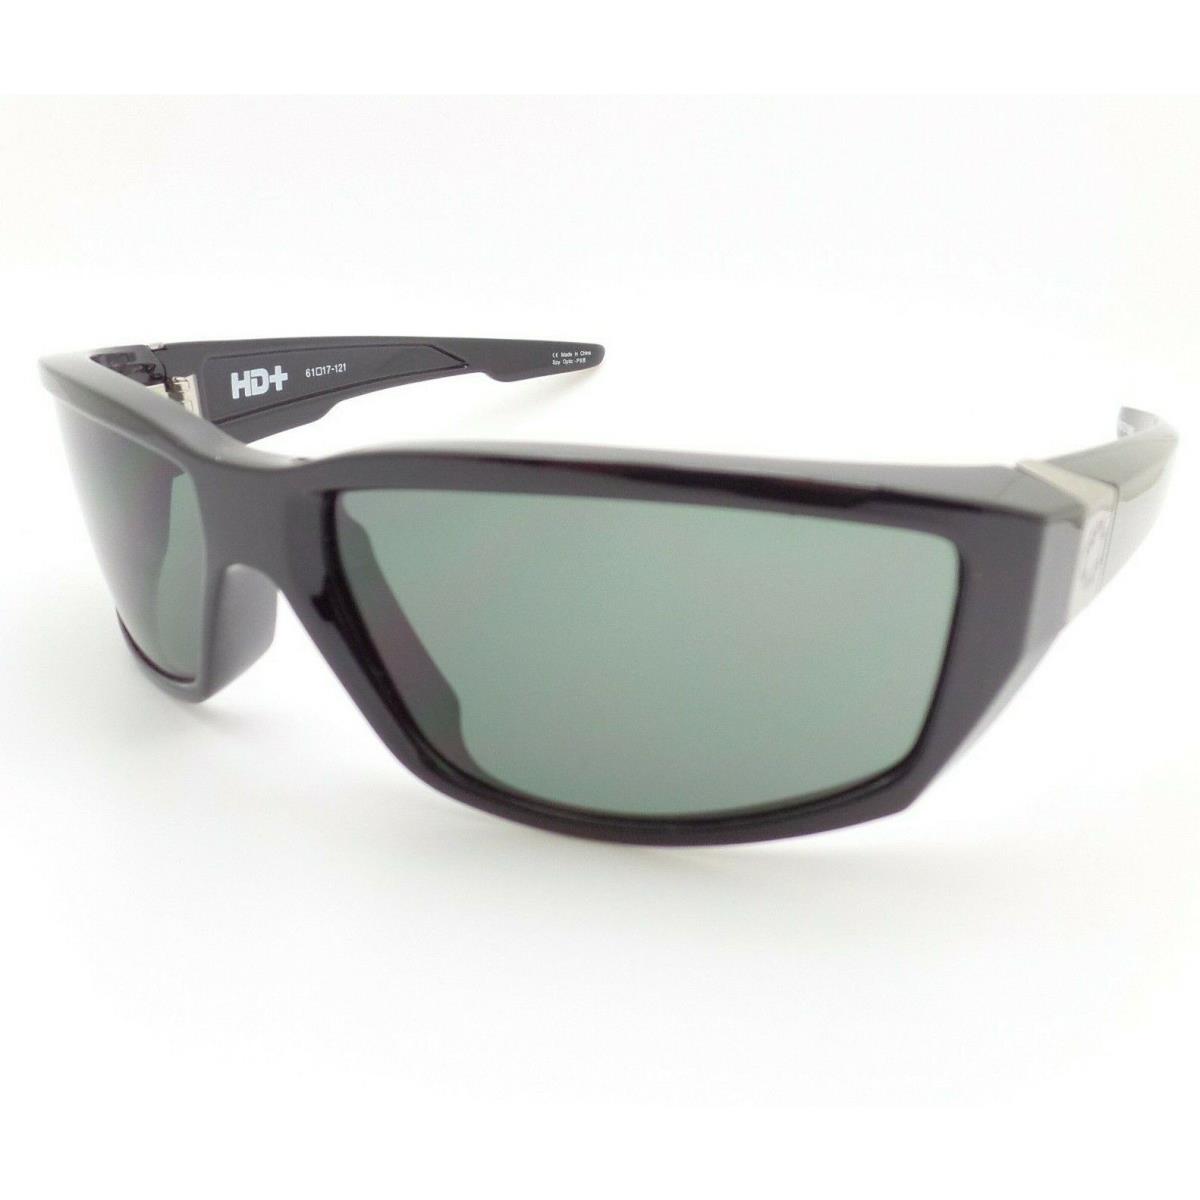 Spy Optics Dirty Mo Shiny Black Hd+ Grey Green Sunglasses - Frame: Shiny Black, Lens: Green Happy Grey